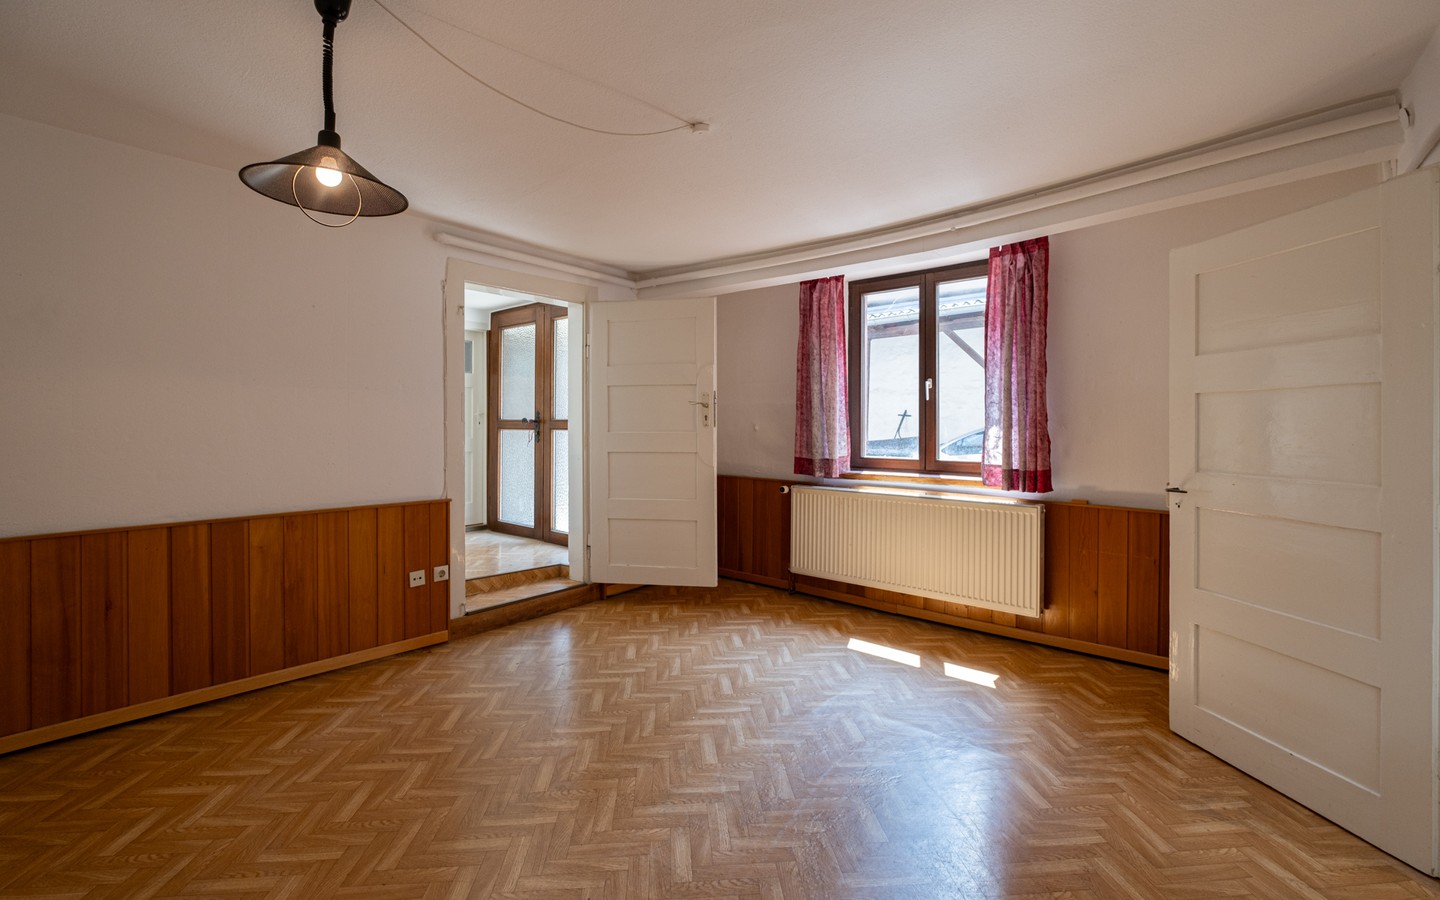 Zimmer 4 Wohnung Nr. 1 - Mehrfamilienhaus mit beeindruckender Historie und Potential in begehrter Wohnlage von Handschuhsheim